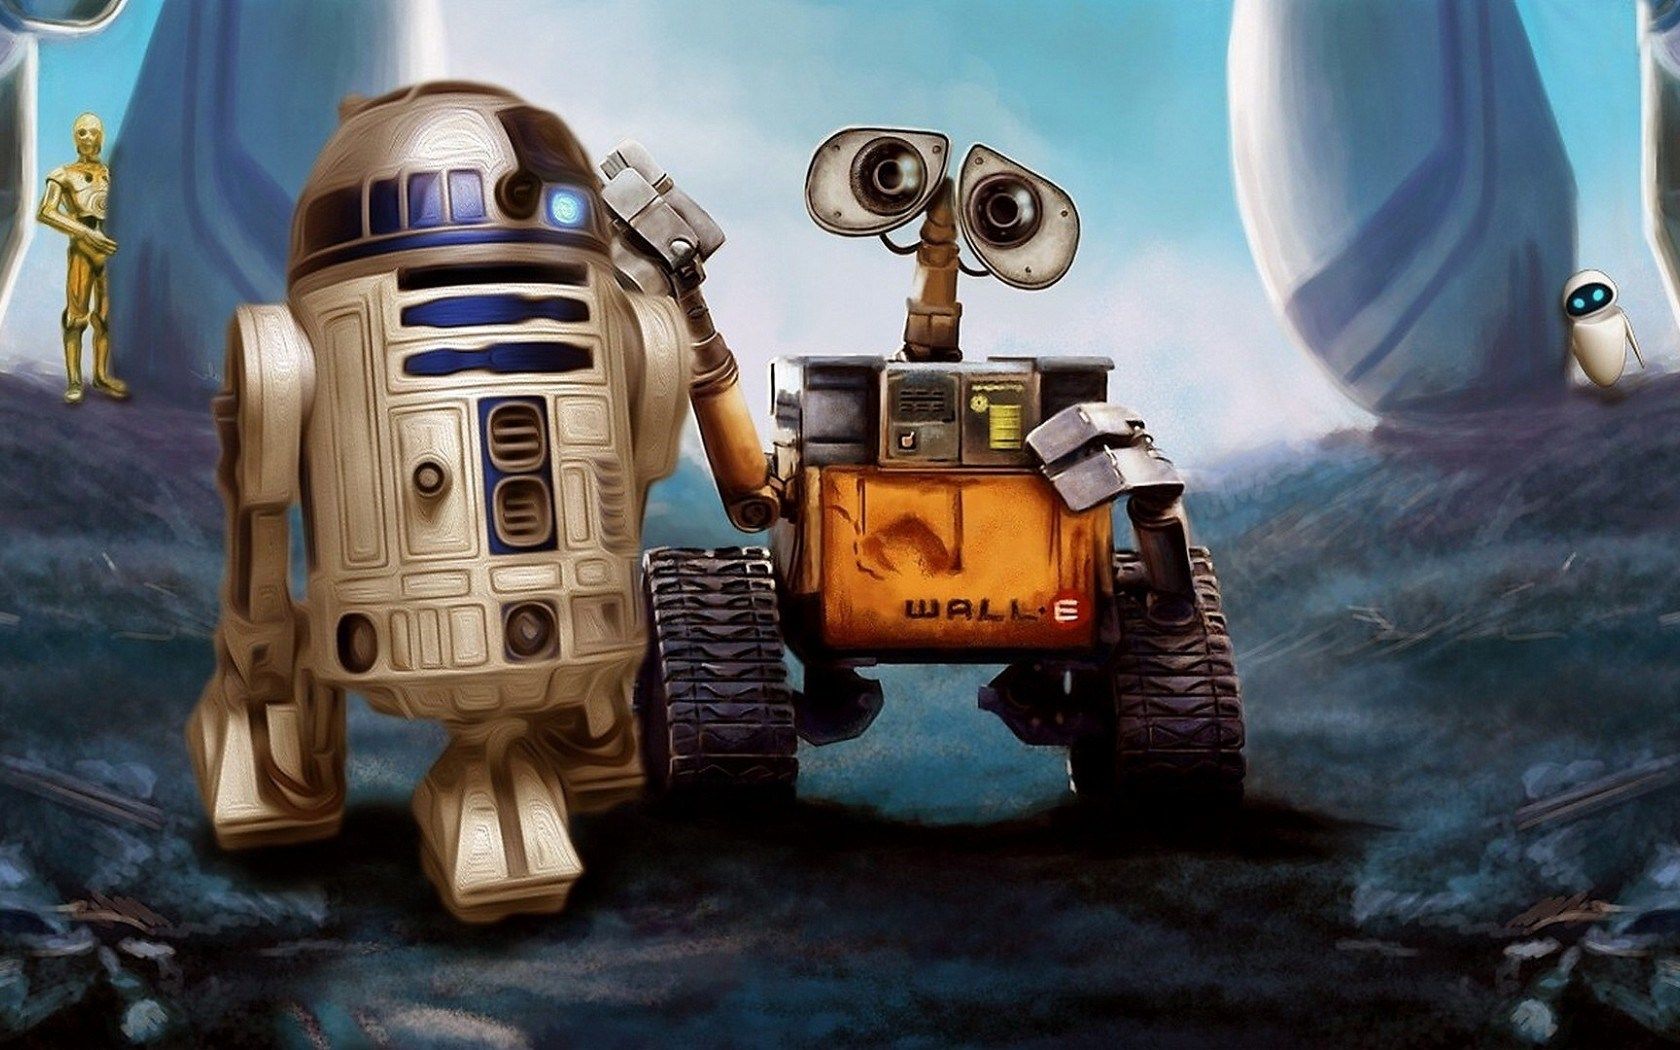 Wall-W R2-D2 Star Wars Robots Cartoon Art HD Wallpaper - FreeWallsUp